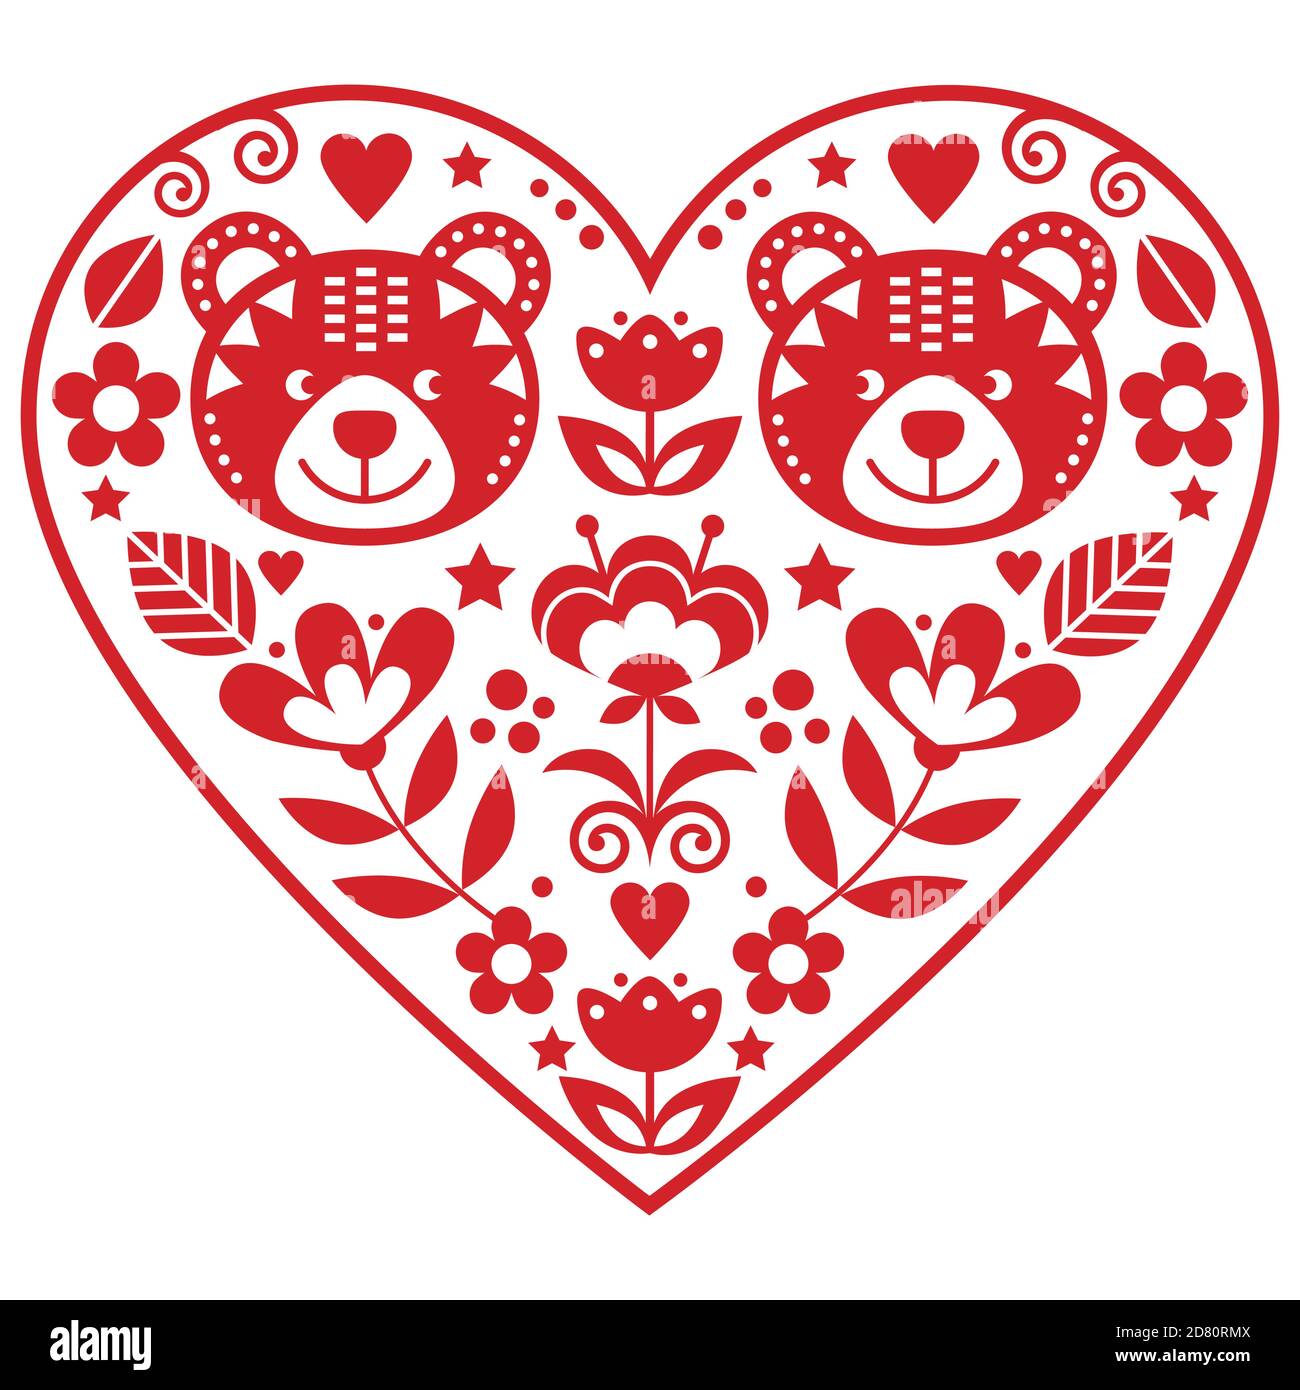 Skandinavisches rotes Herz mit zwei Bären in der Liebe und Blumen Volkskunst Vektor-Design, Valentinstag Blumen Grußkarte oder Hochzeit Einladung Stock Vektor